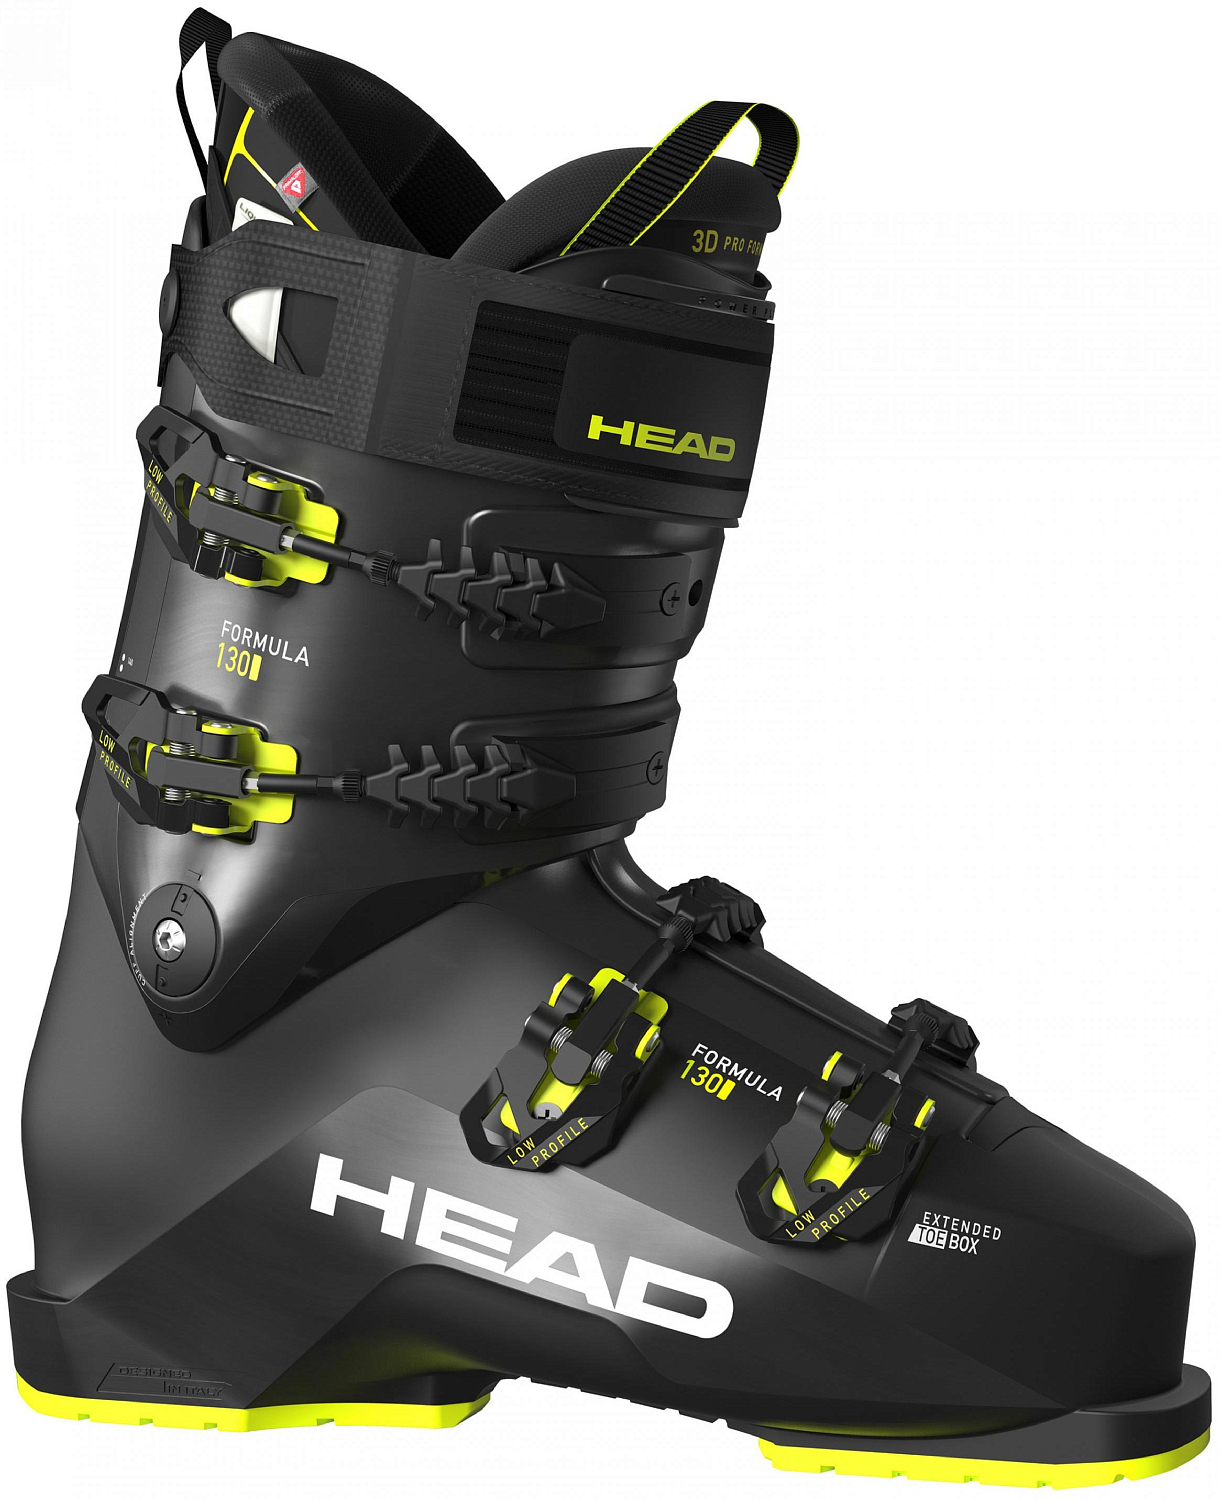 Горнолыжные ботинки Head Formula 130 2022 black/yellow, 27,5 см